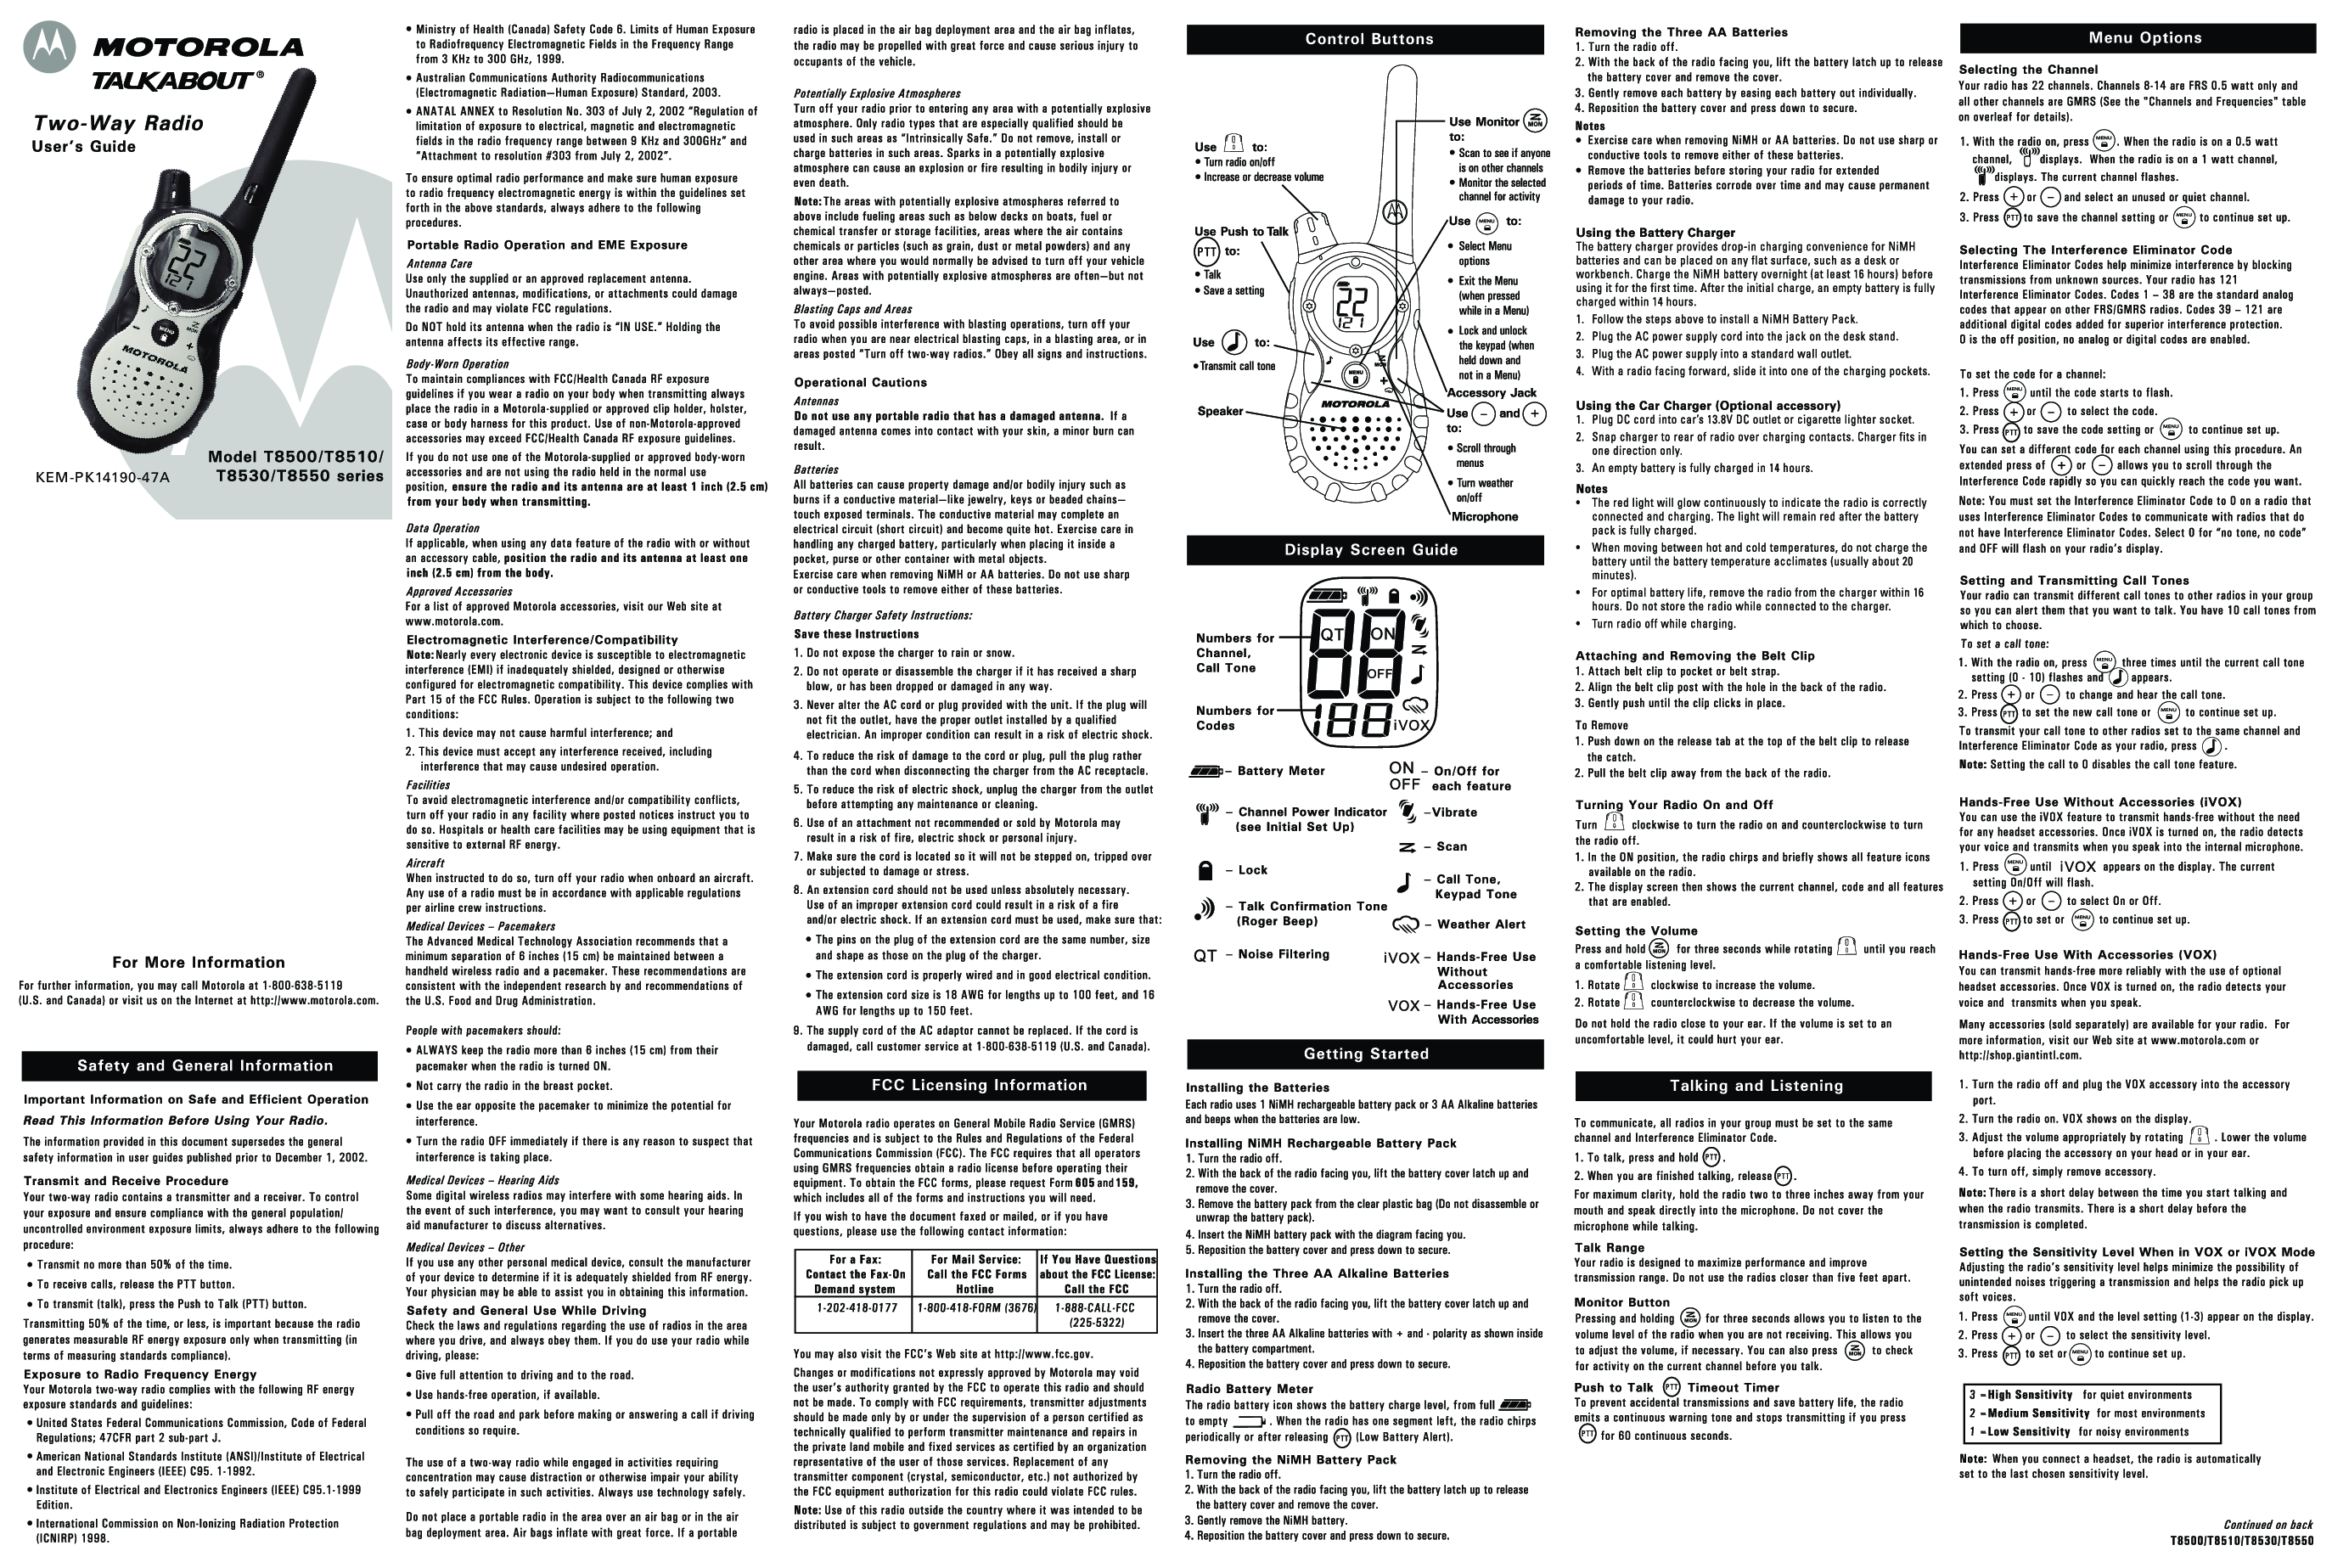 Motorola T8530, KEM-PK14190-47A, T8550 User Manual